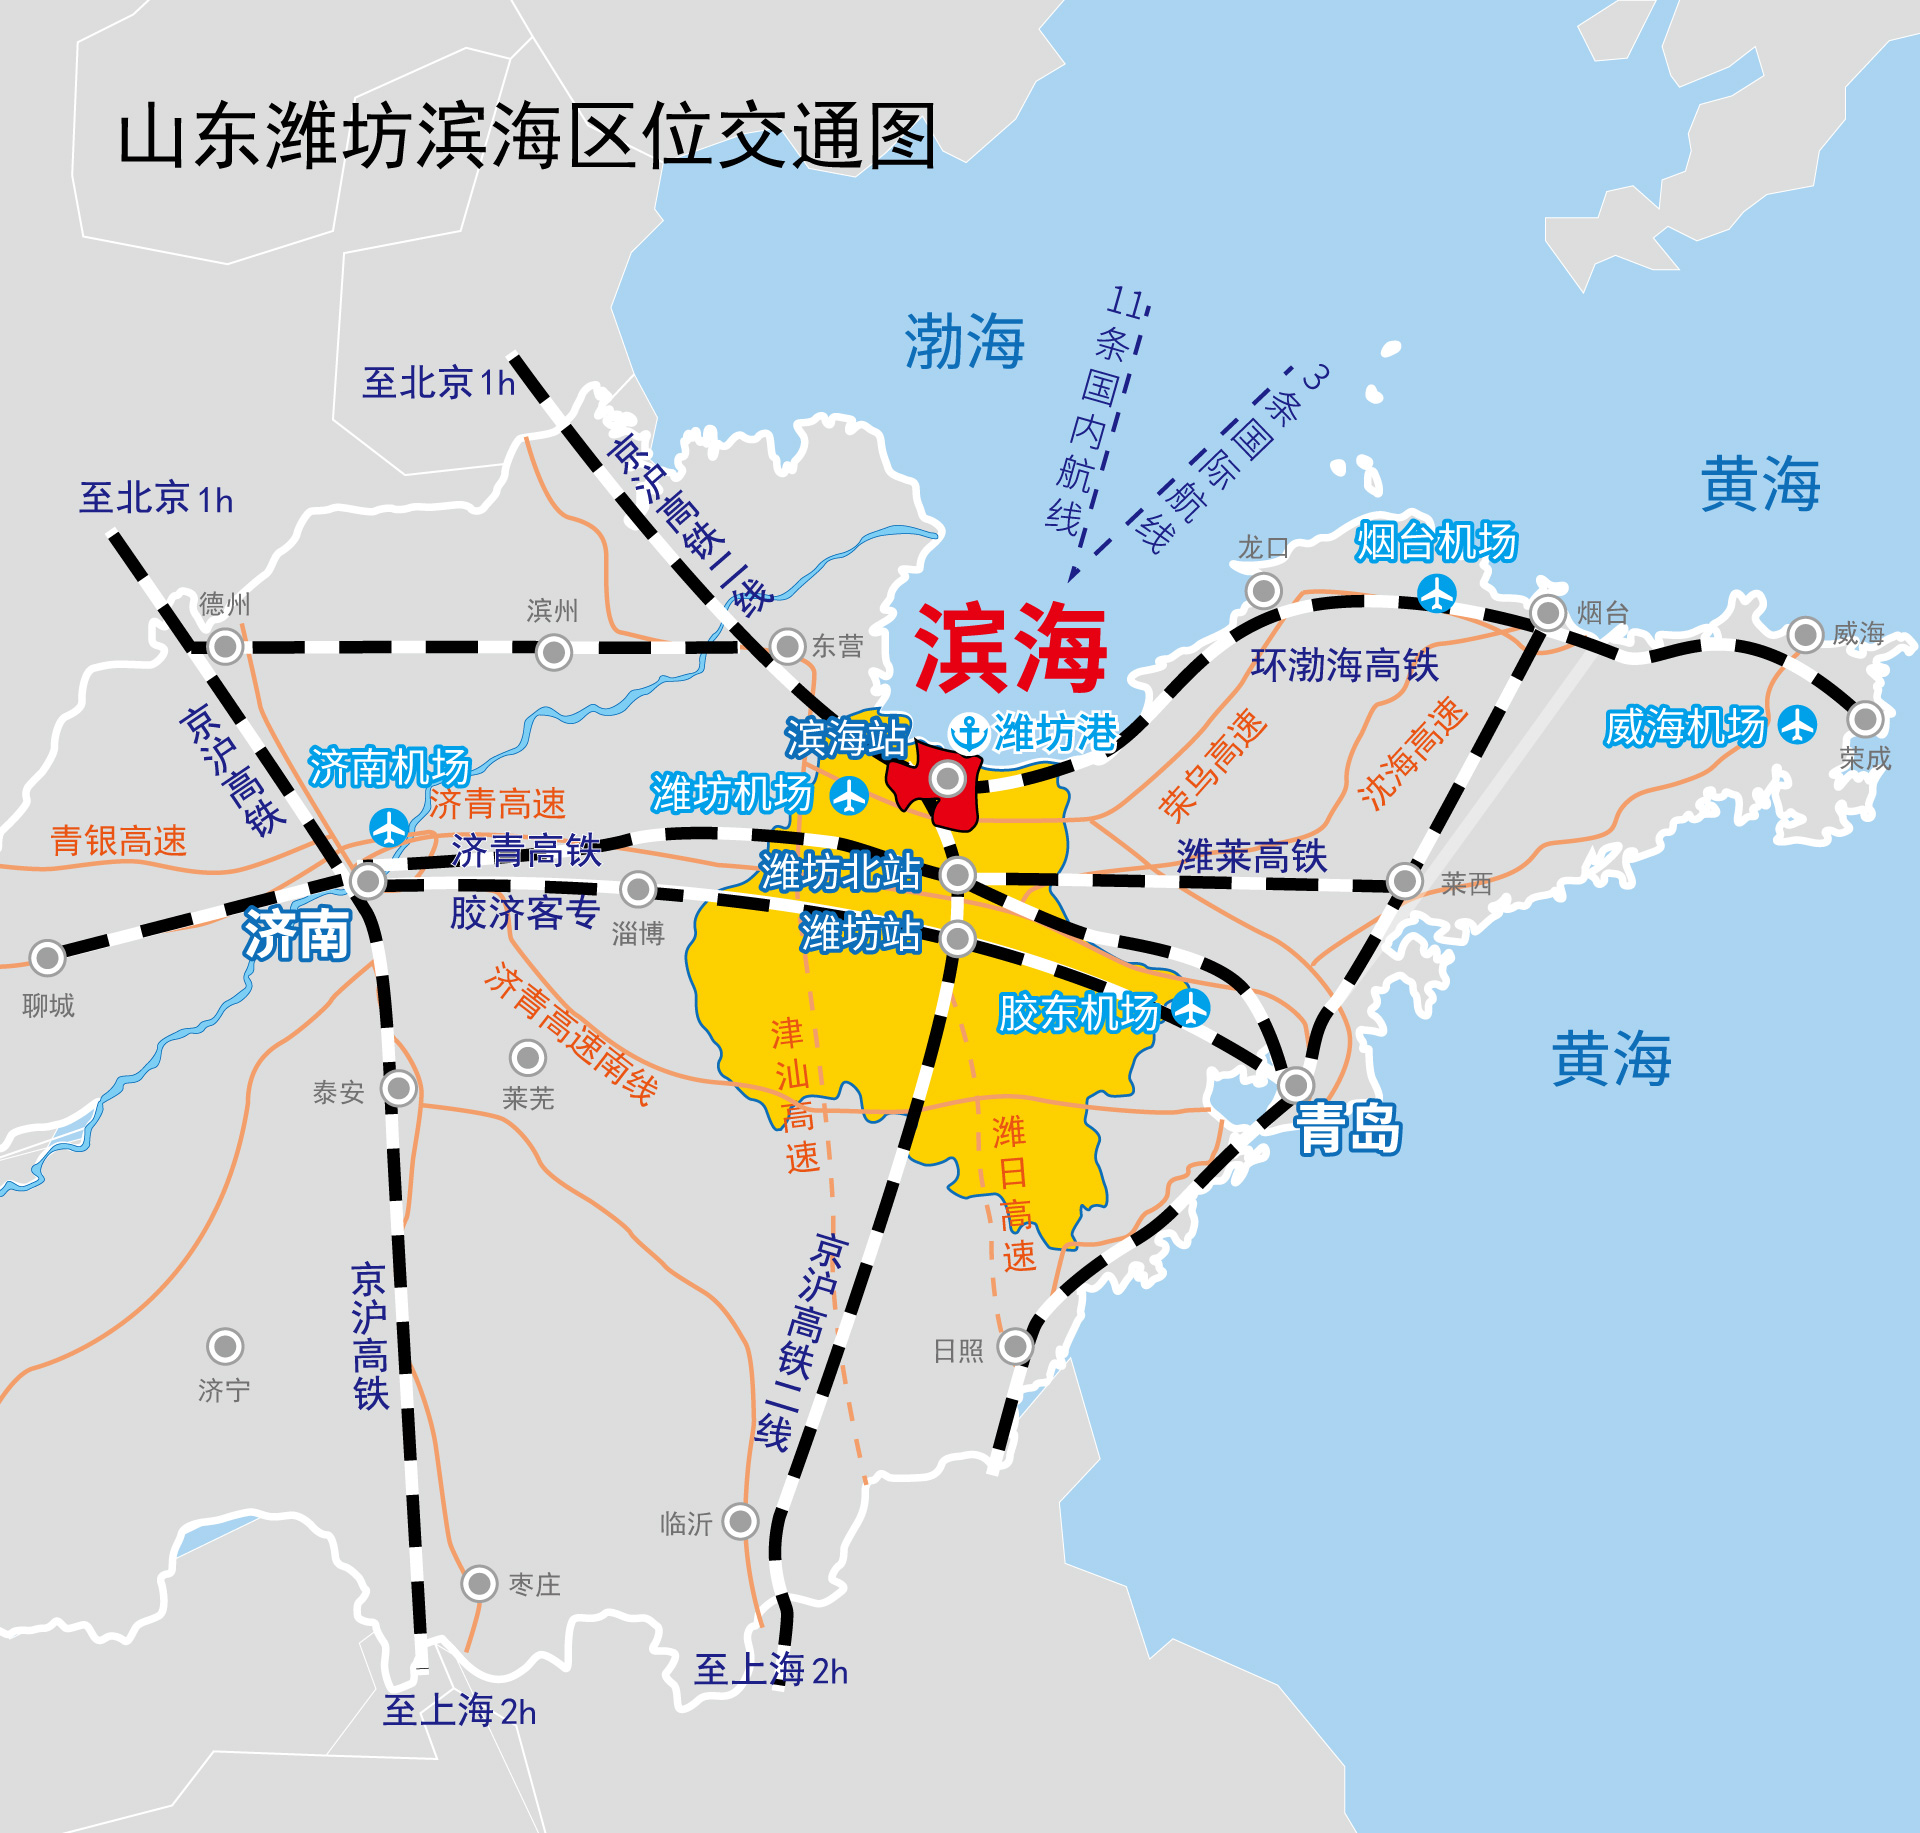 从地理位置上看,潍坊,地扼山东内陆腹地通往半岛地区的咽喉,济青高铁